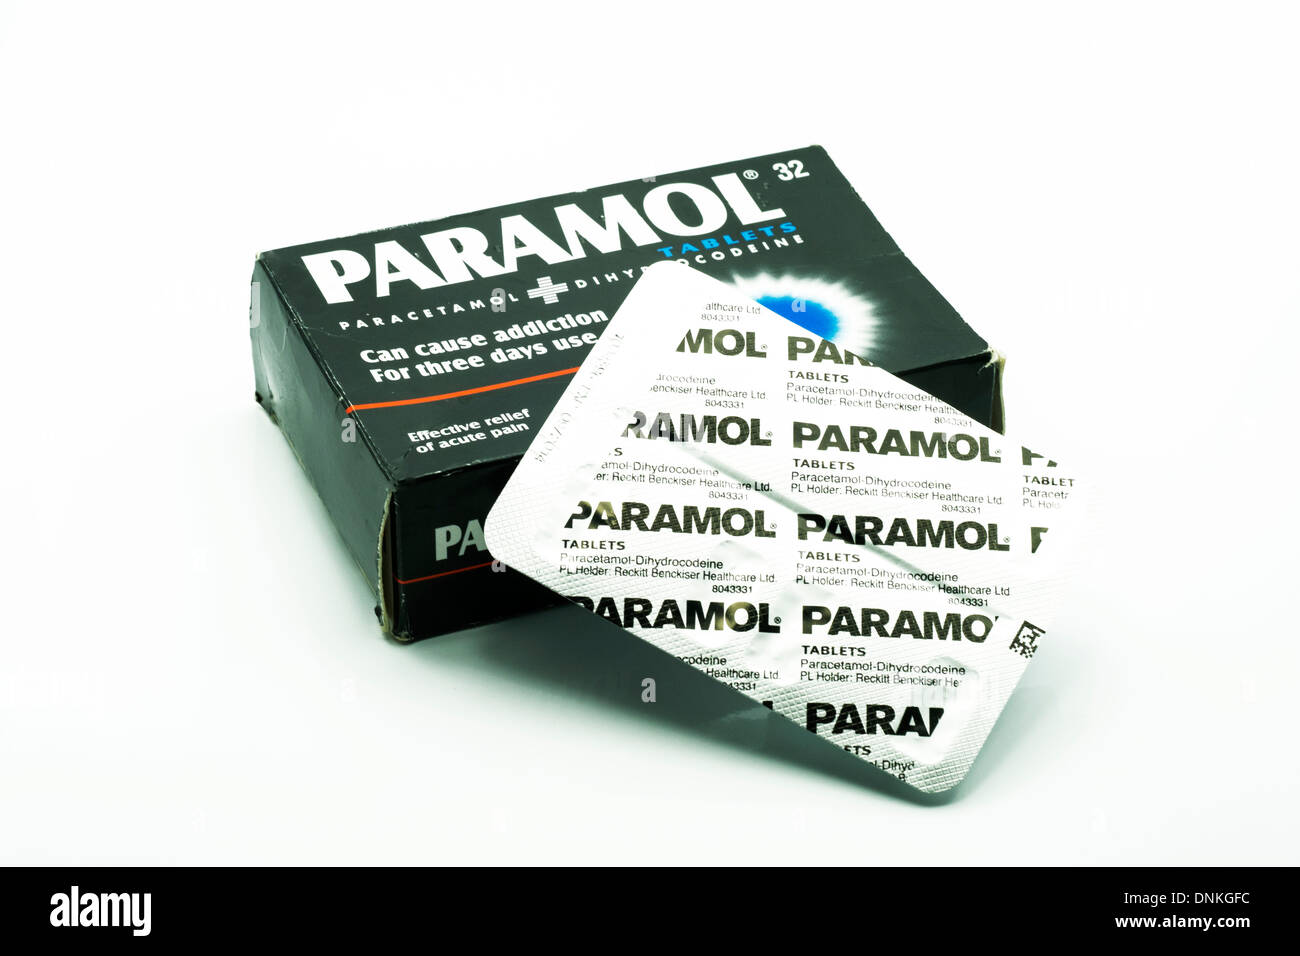 Paramol hohe Festigkeit Paracetamol Tabletten und Box ausgeschnitten weißen Hintergrund Textfreiraum Stockfoto